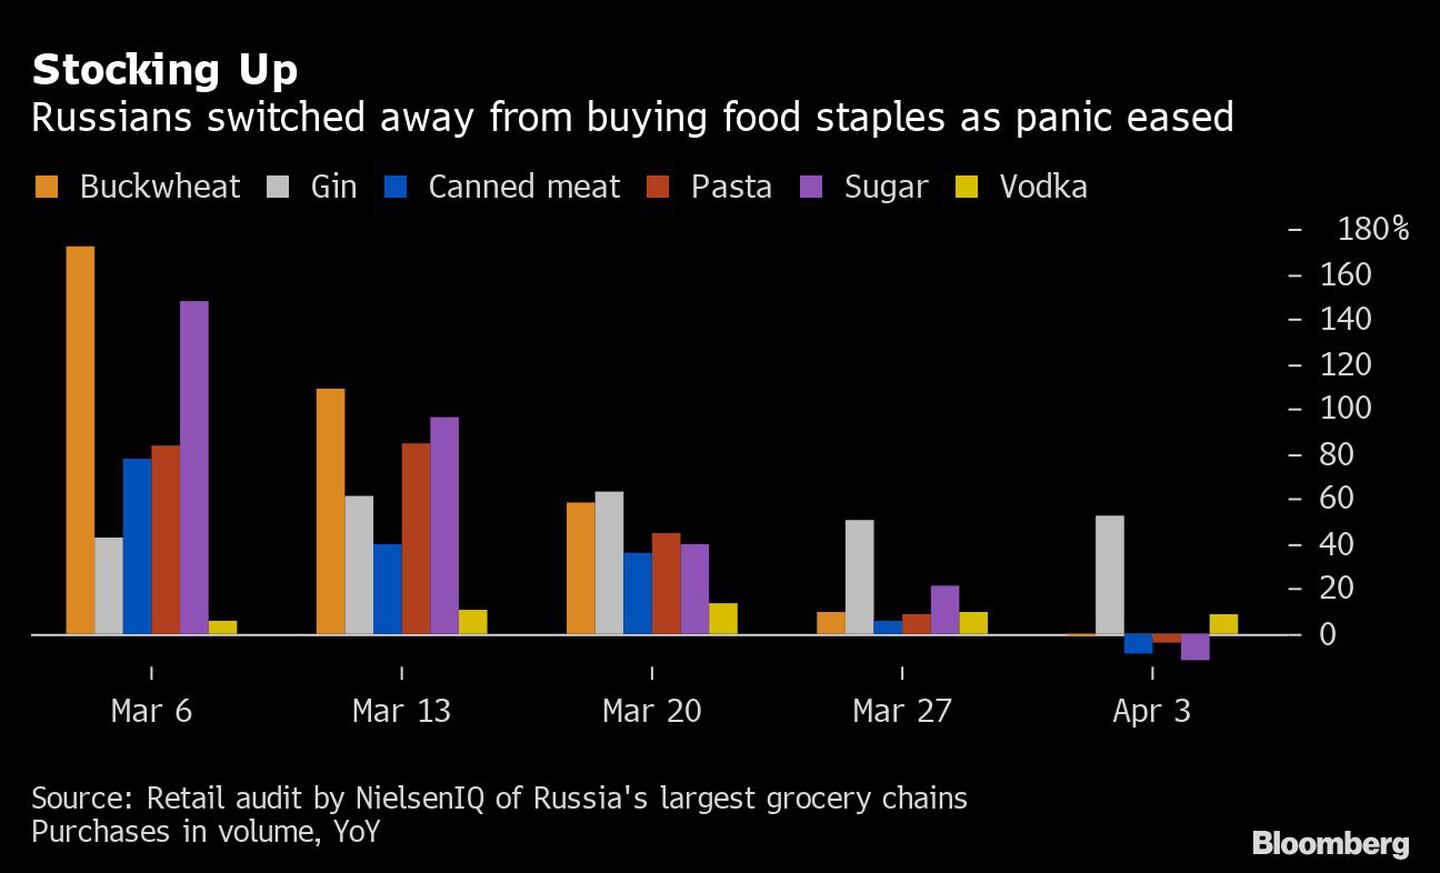 Abastecimiento
Los rusos dejaron de comprar alimentos básicos al ceder el pánico
Naranja: Trigo sarraceno, Blanco: Ginebra, Azul: Carne enlatada, Rojo: Pasta, Púrpura: Azúcar, Amarillo: Vodkadfd